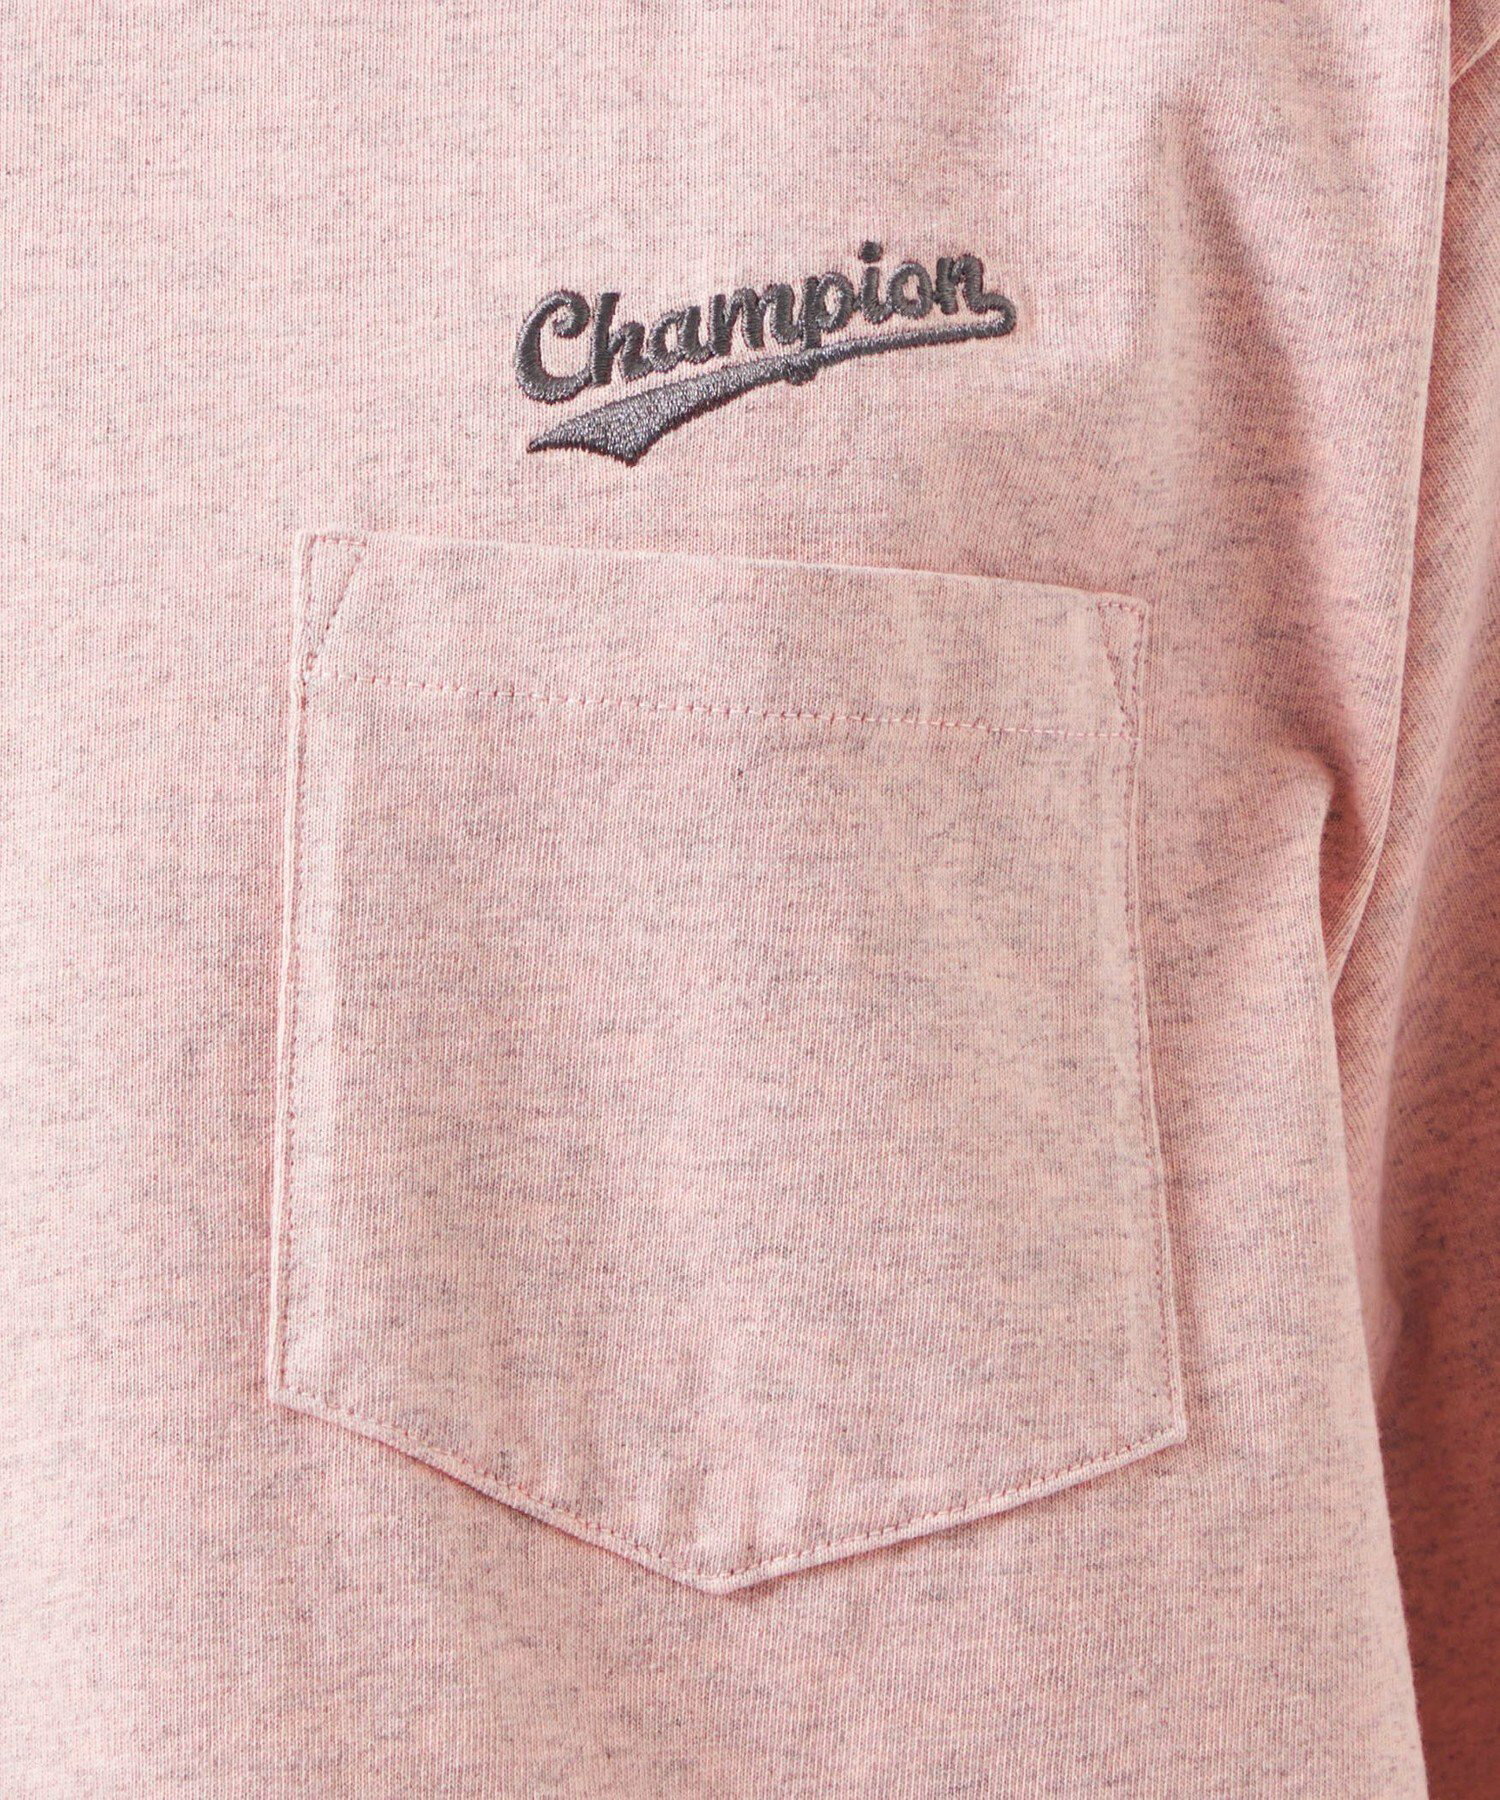 【別注】<Champion*green label relaxing>ロゴ ポケット Tシャツ